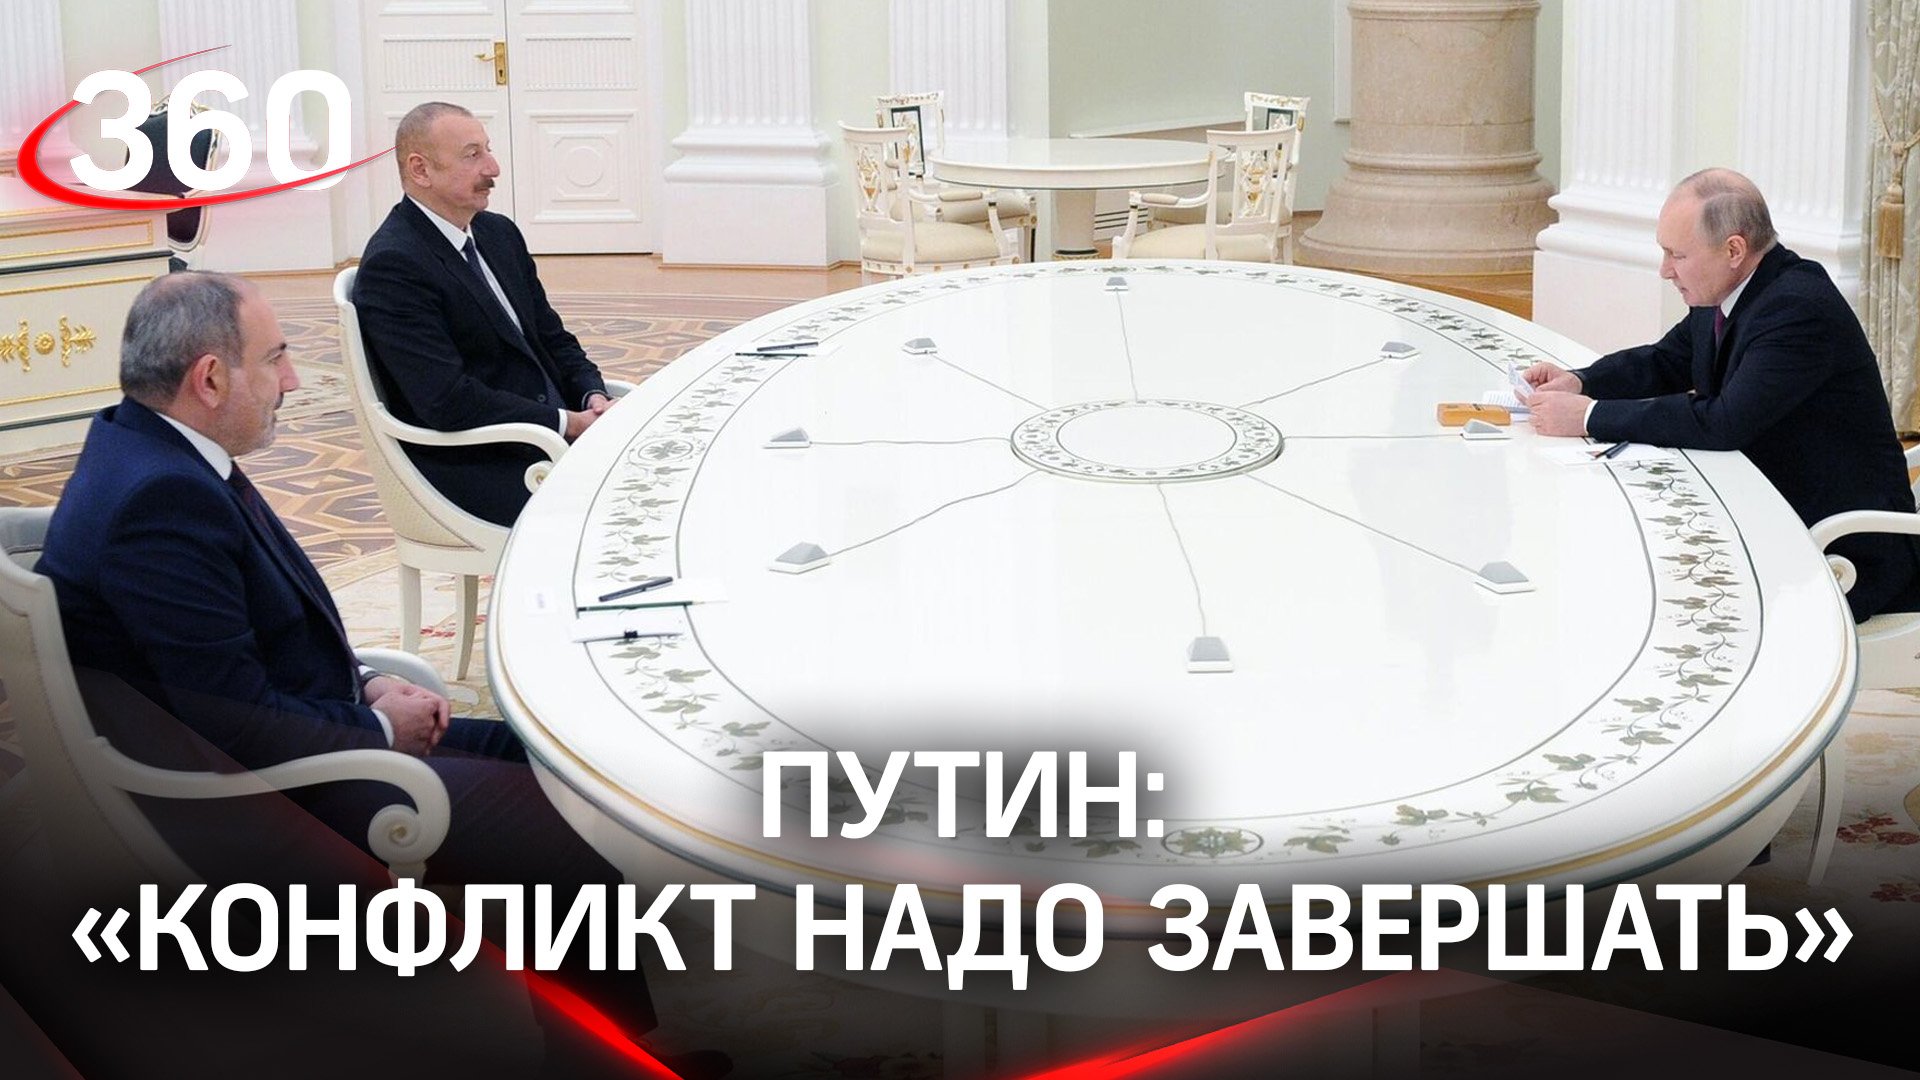 Путин: «Конфликт надо завершать». Итоги трёхстороннего саммита в Сочи по Нагорному Карабаху